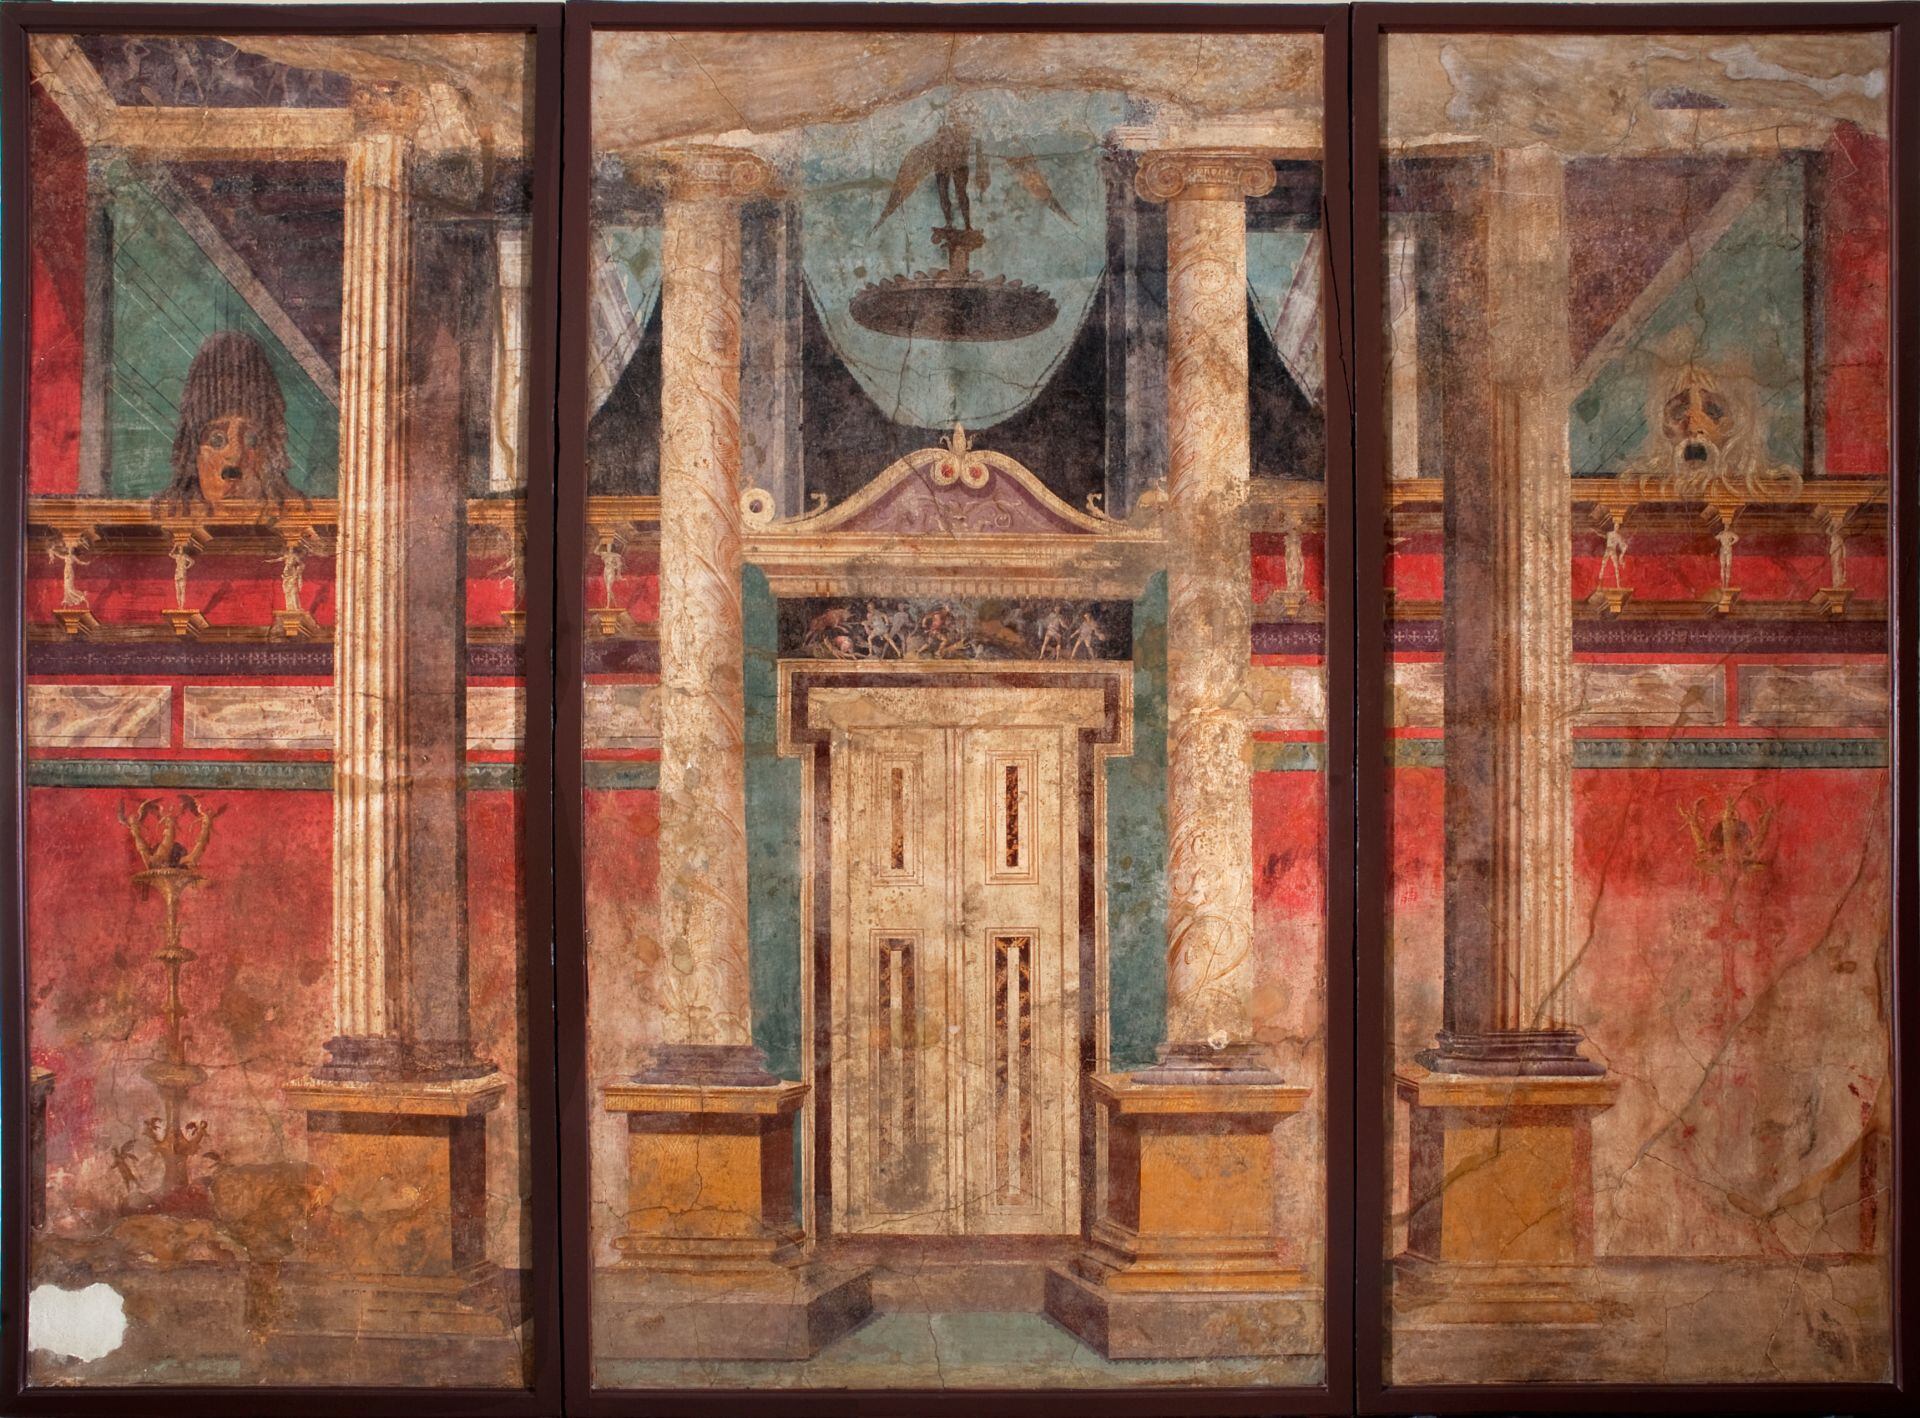 Fresco con una escena de casa, de Boscoreale, que puede verse en la exposición 'Alejandro Magno y Oriente', en el Museo Arqueológico Nacional de Nápoles hasta el 28 de agosto.